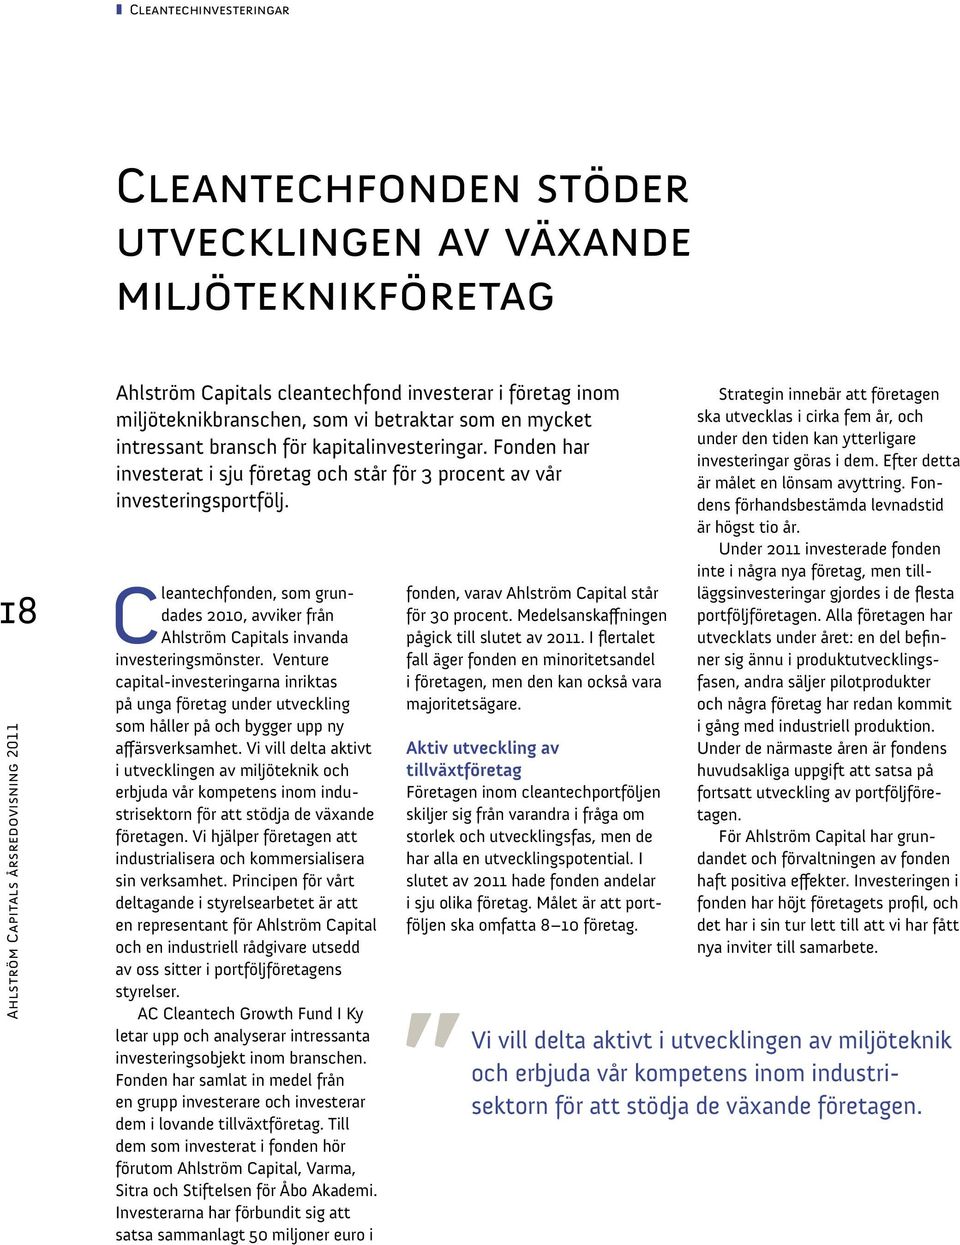 Cleantechfonden, som grundades 2010, avviker från Ahlström Capitals invanda investeringsmönster.